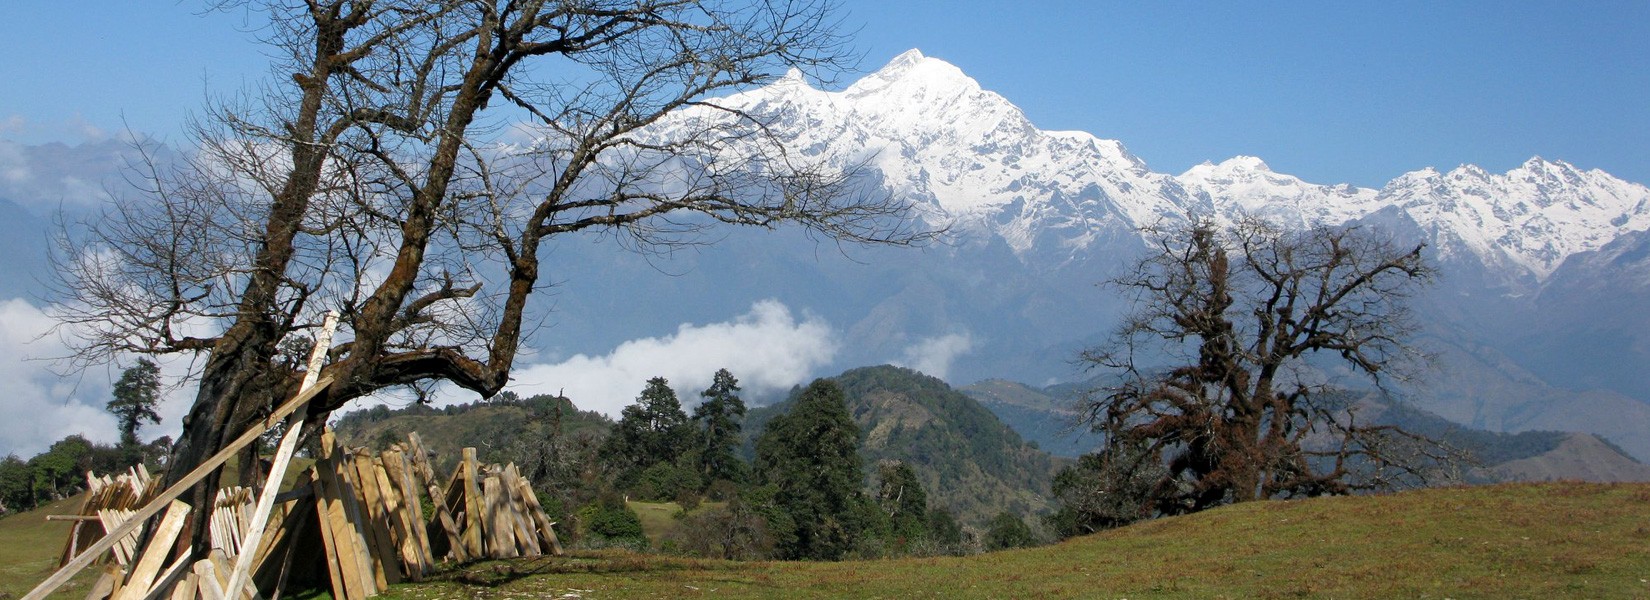 View from Dharche Danda in Lower Manaslu Trek